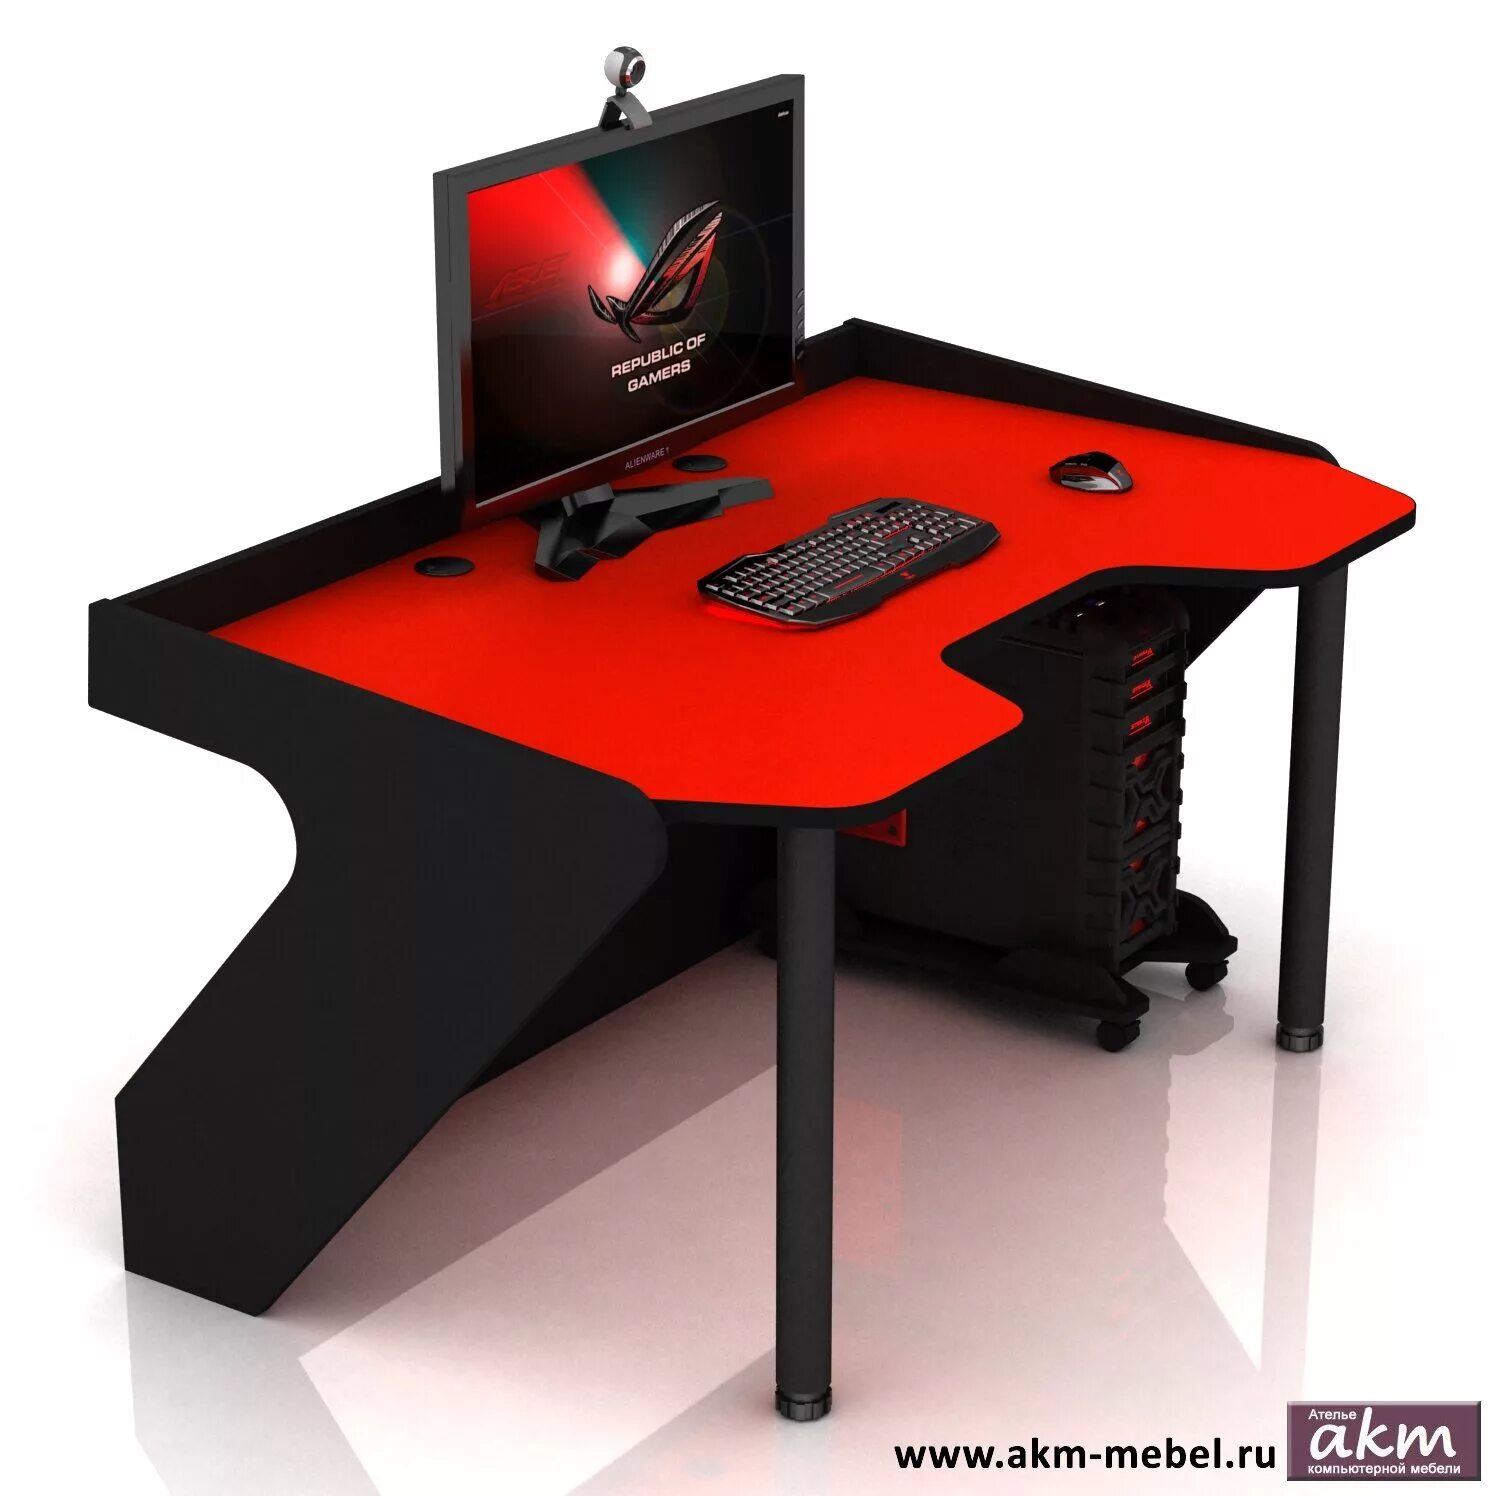 Геймерский компьютерный купить. Геймерский компьютерный стол DX Panther. Стол компьютерный геймер Термит. Игровой стол угловой AKM-mebel Dr.Racer King. Геймерский стол Mad Racer Pilot угловой.